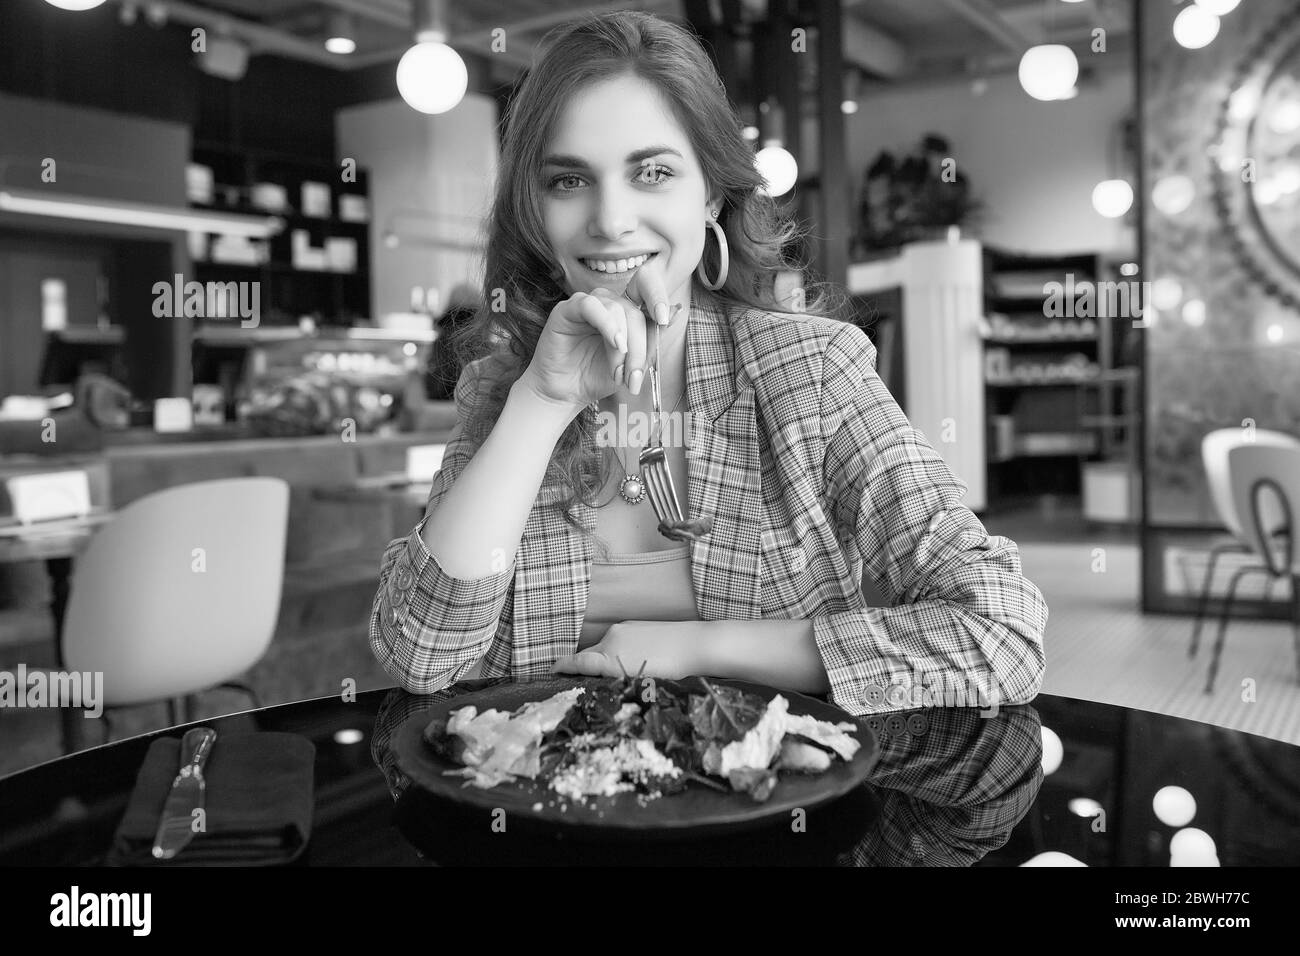 Ritratto di giovane bella donna sorridente che mangia cibo sano all'interno del bar Foto Stock